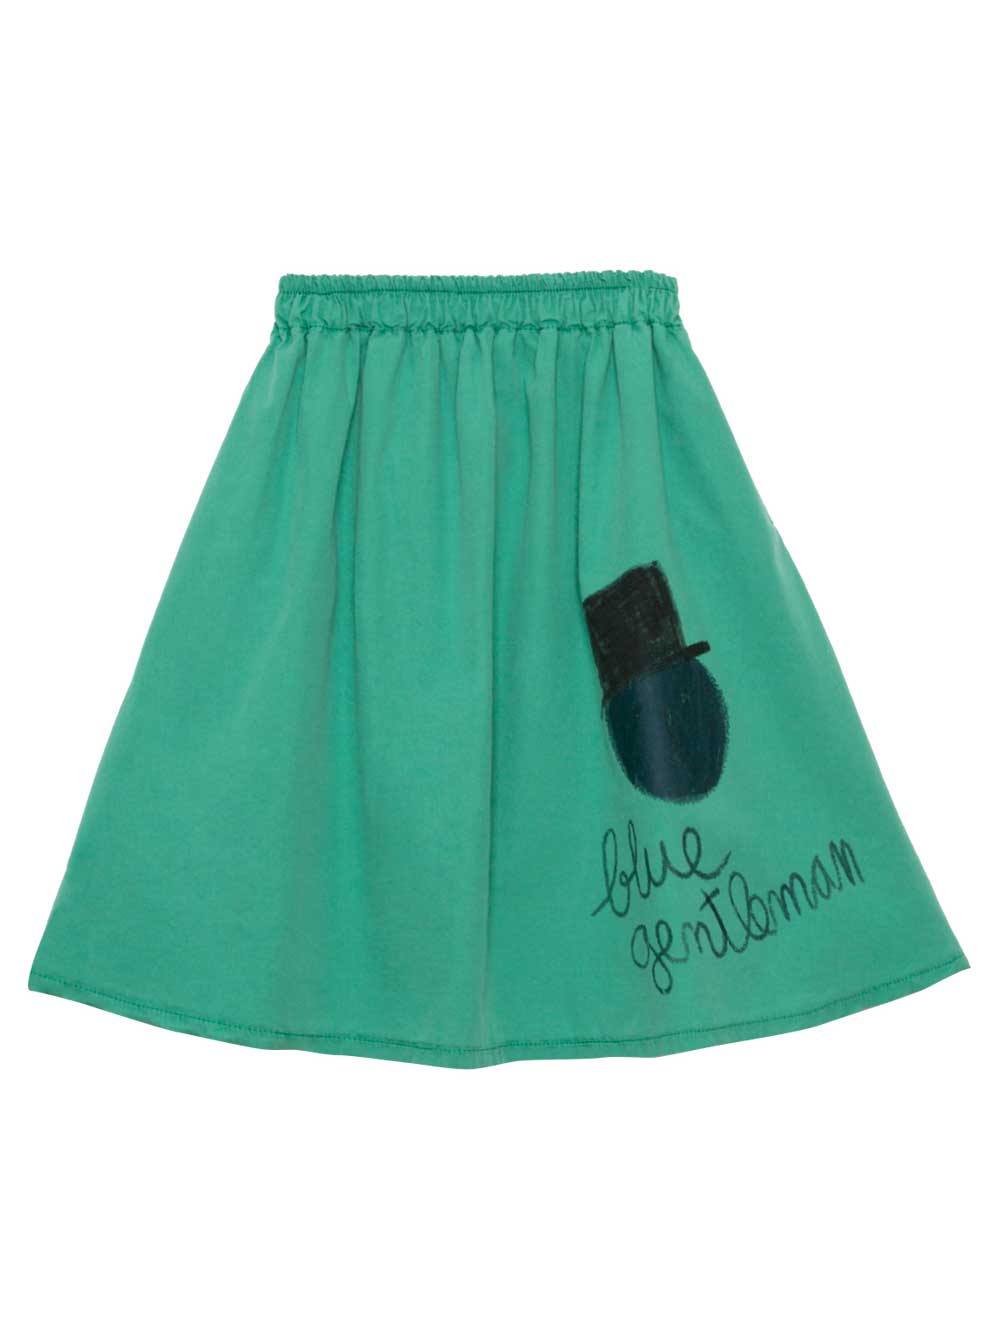 Gentleman Green Skirt